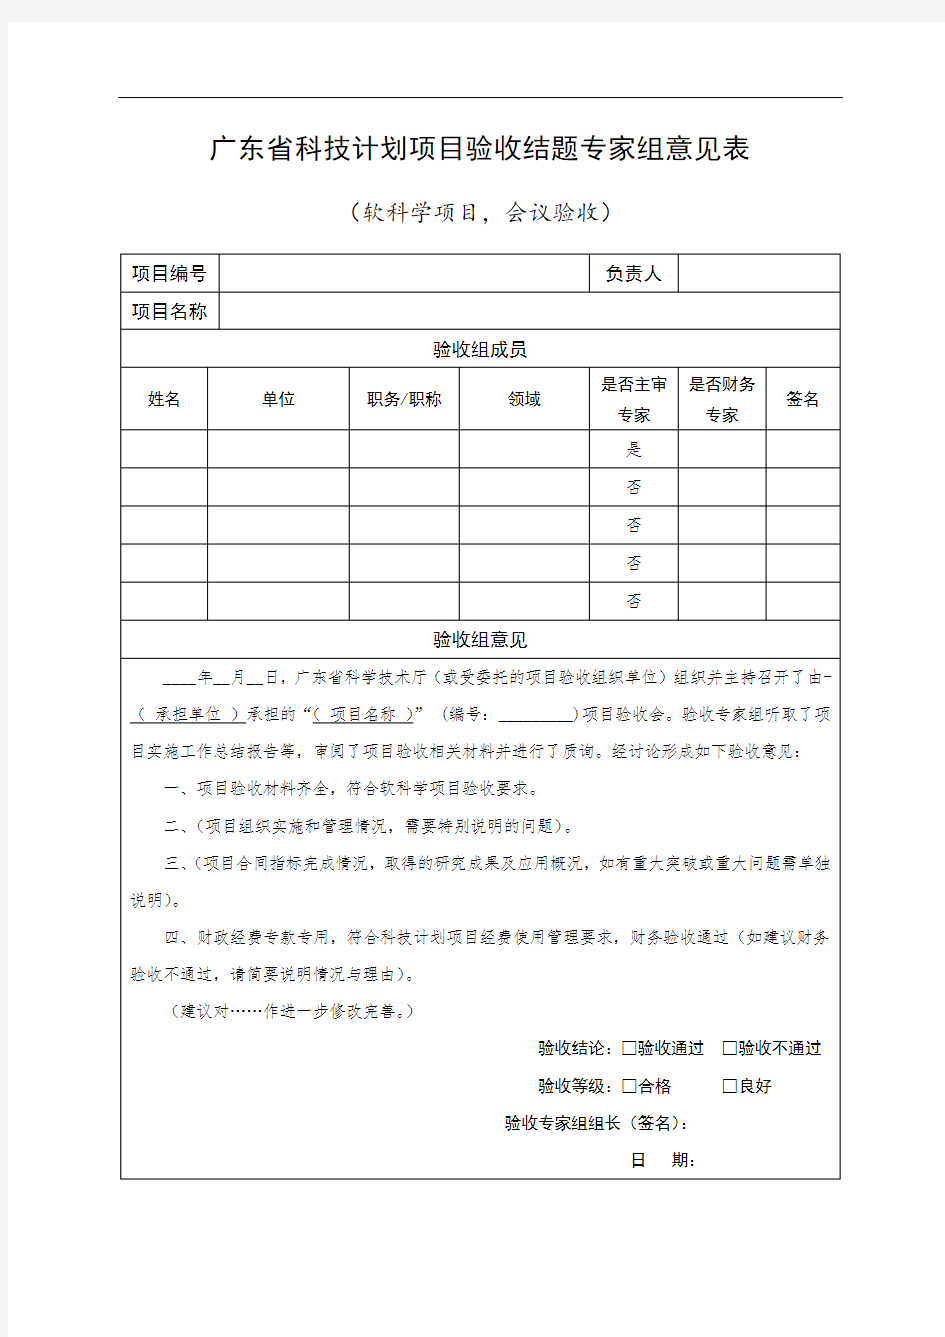 广东省科技计划项目验收结题专家组意见表【模板】